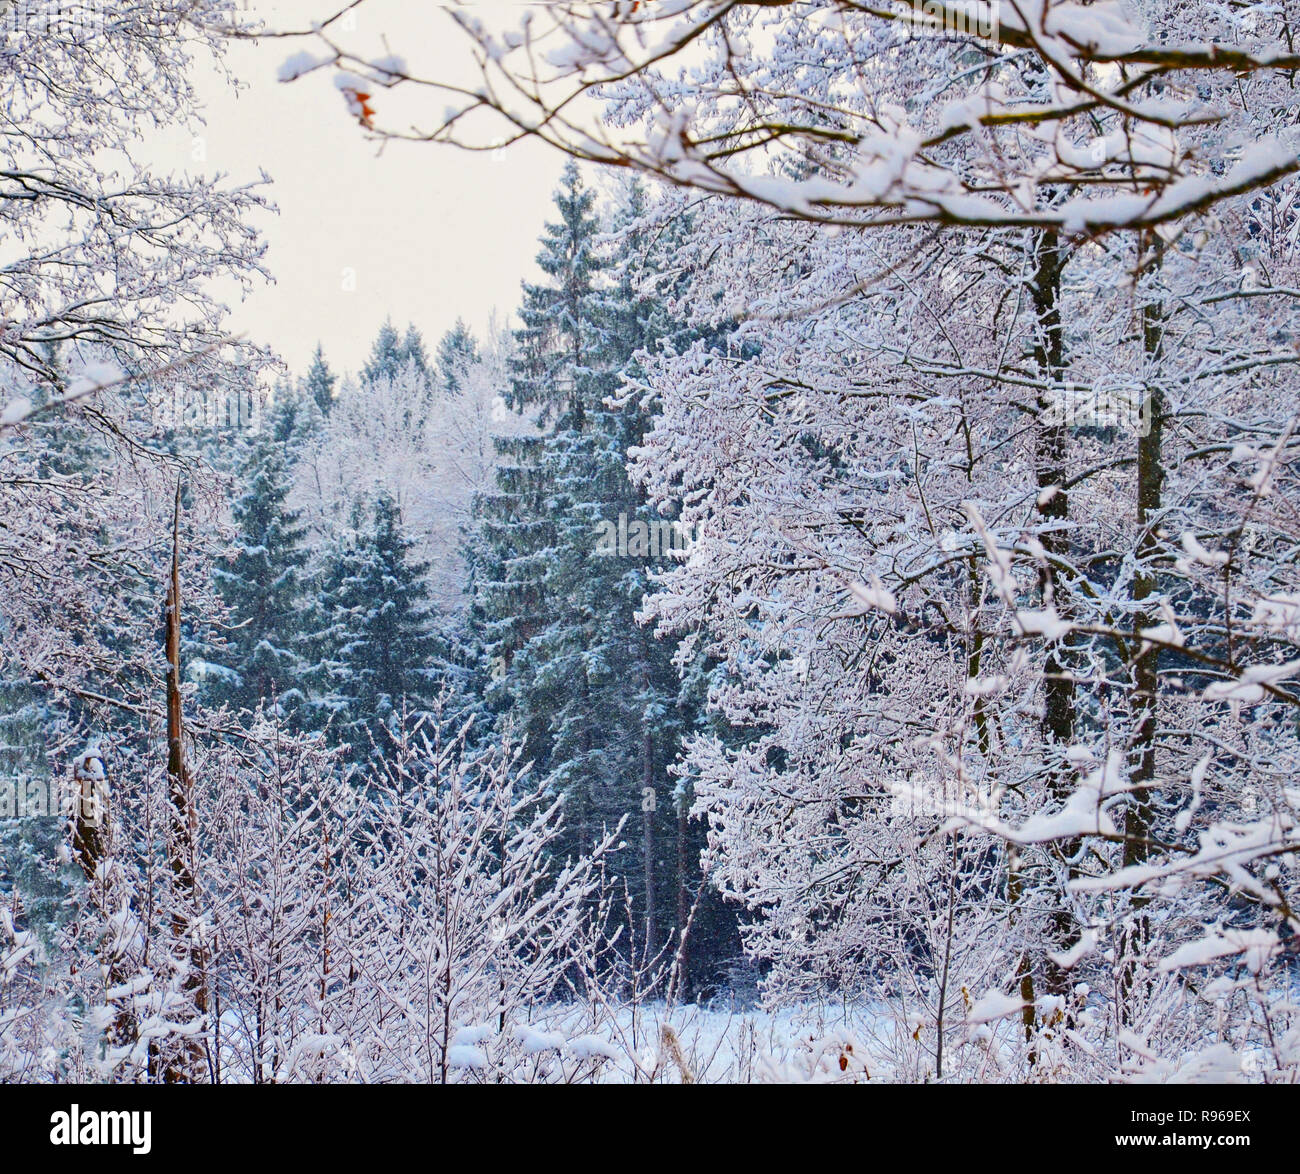 Immagine di stock. Rami di alberi e cespugli in rime di ghiaccio. In inverno il paesaggio della foresta. Foto Stock